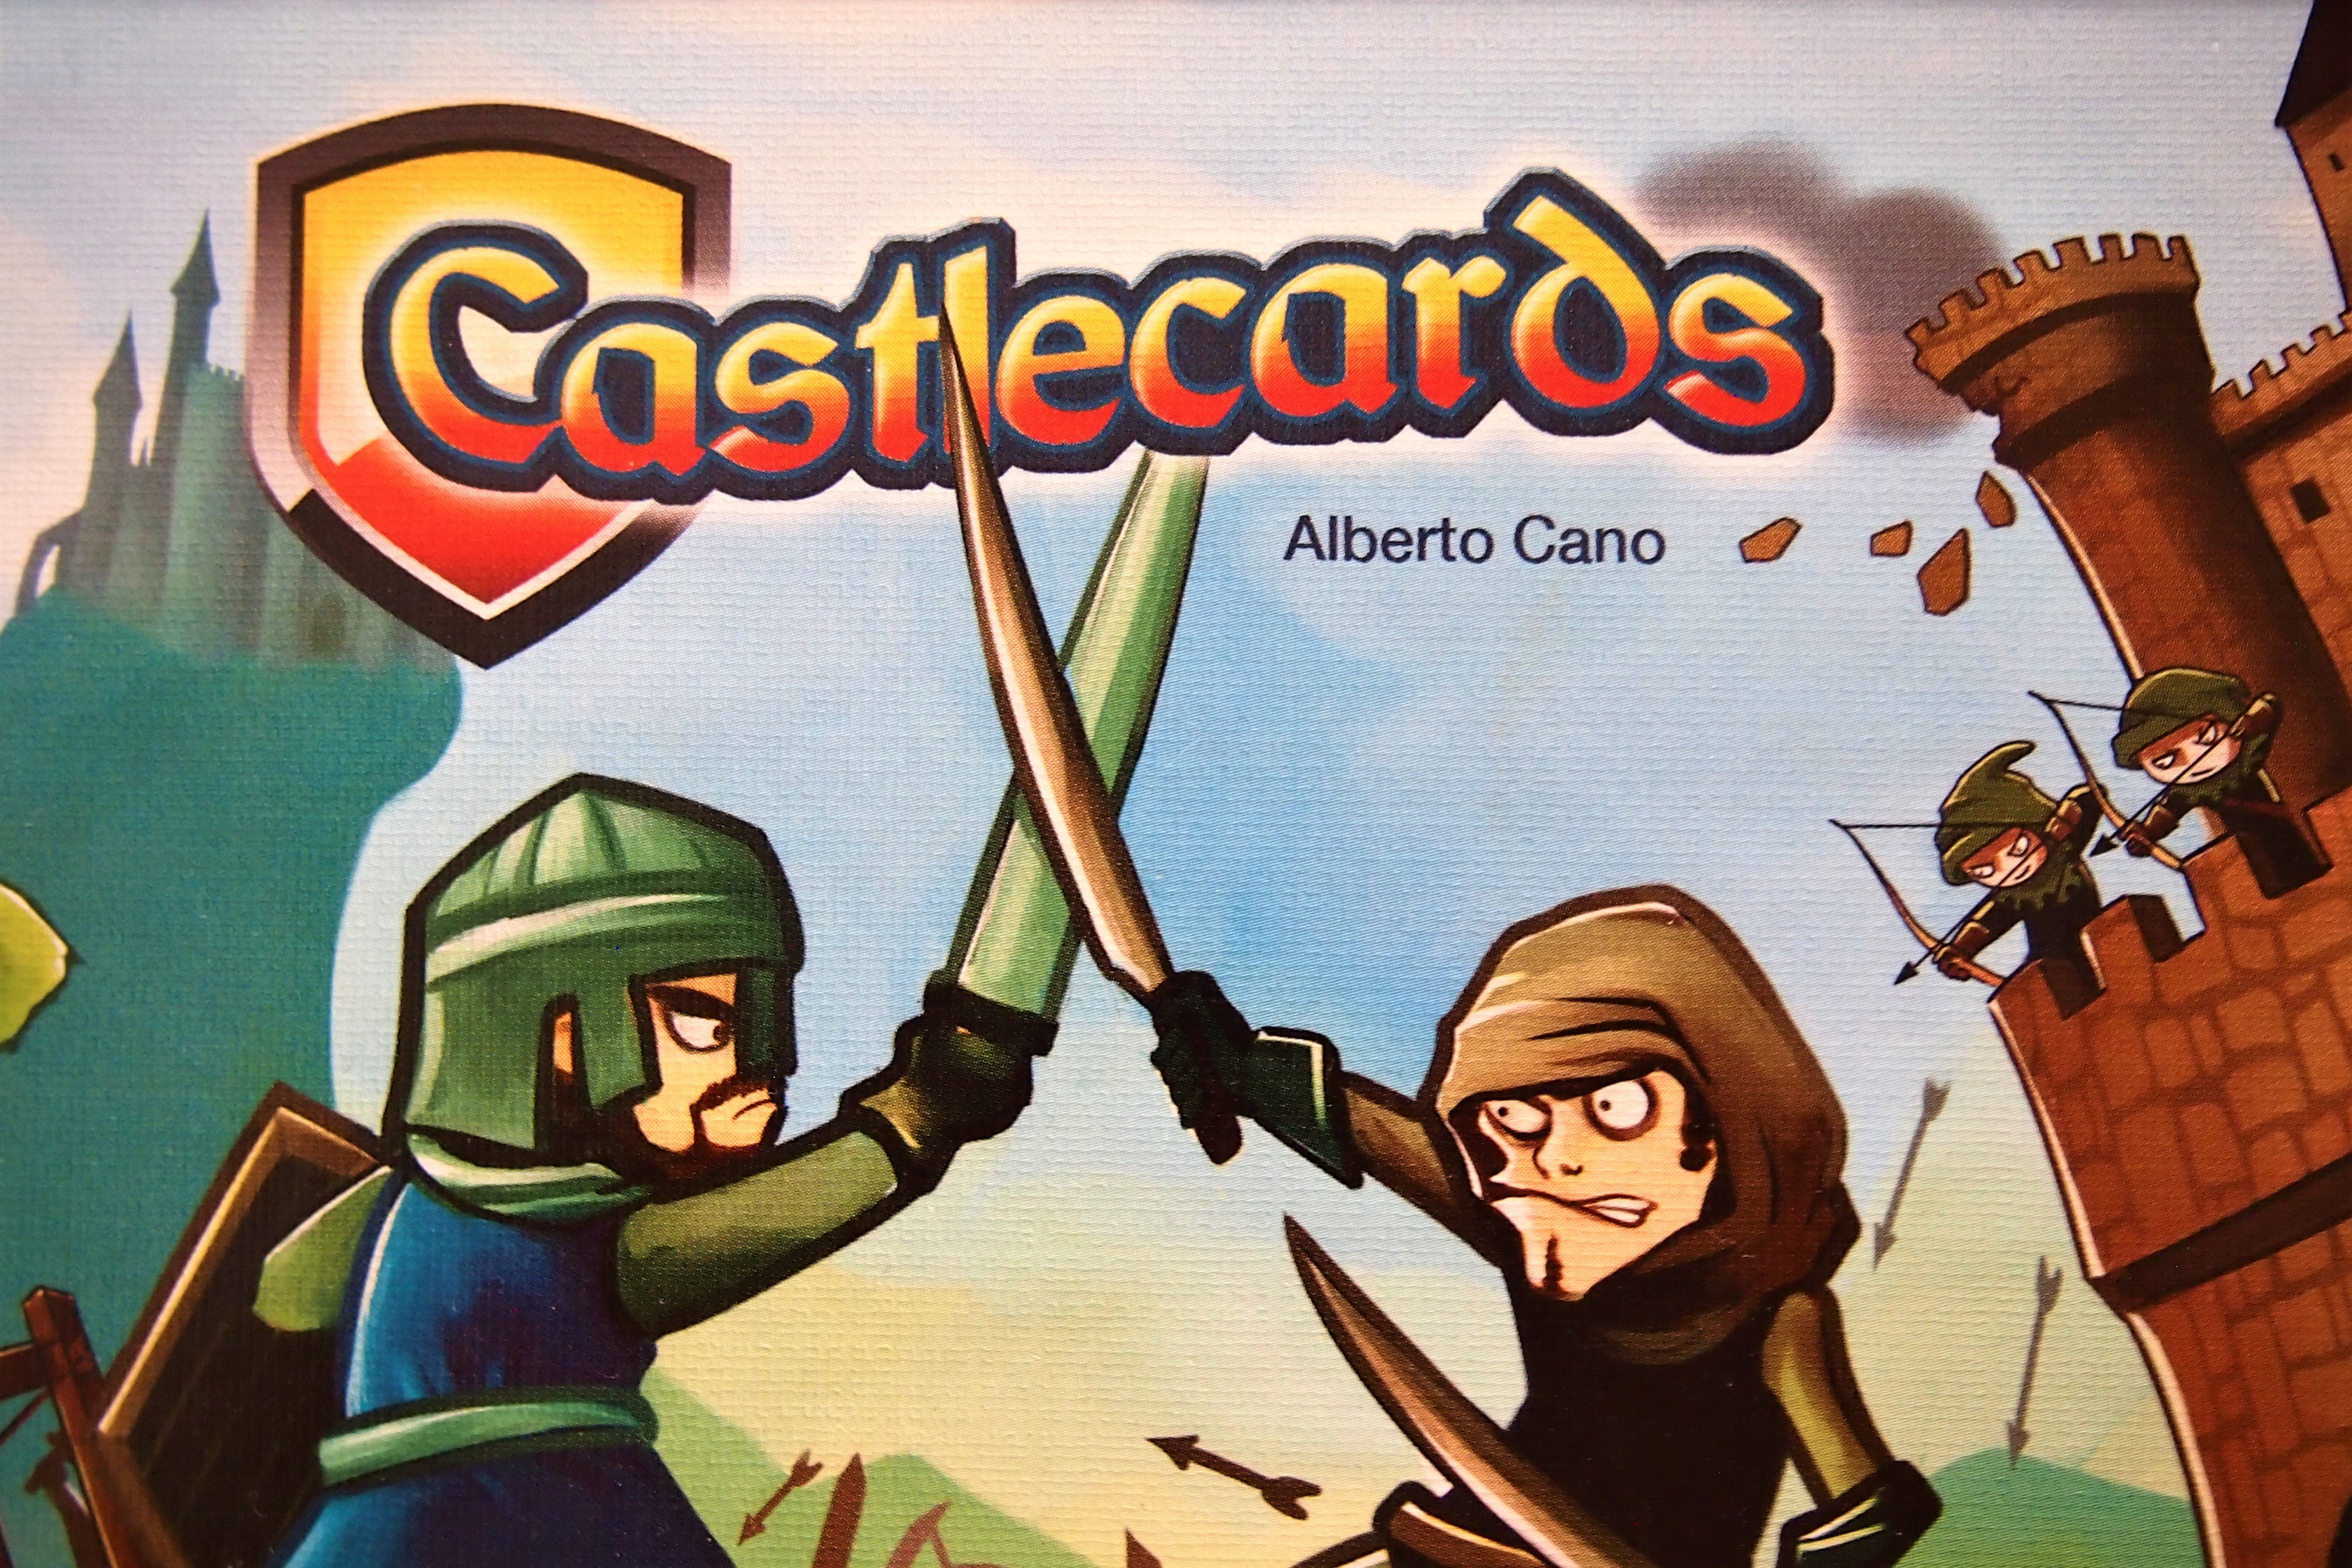 Castlecards: la combinación entre y defensa en un adictivo juego • Consola y Tablero